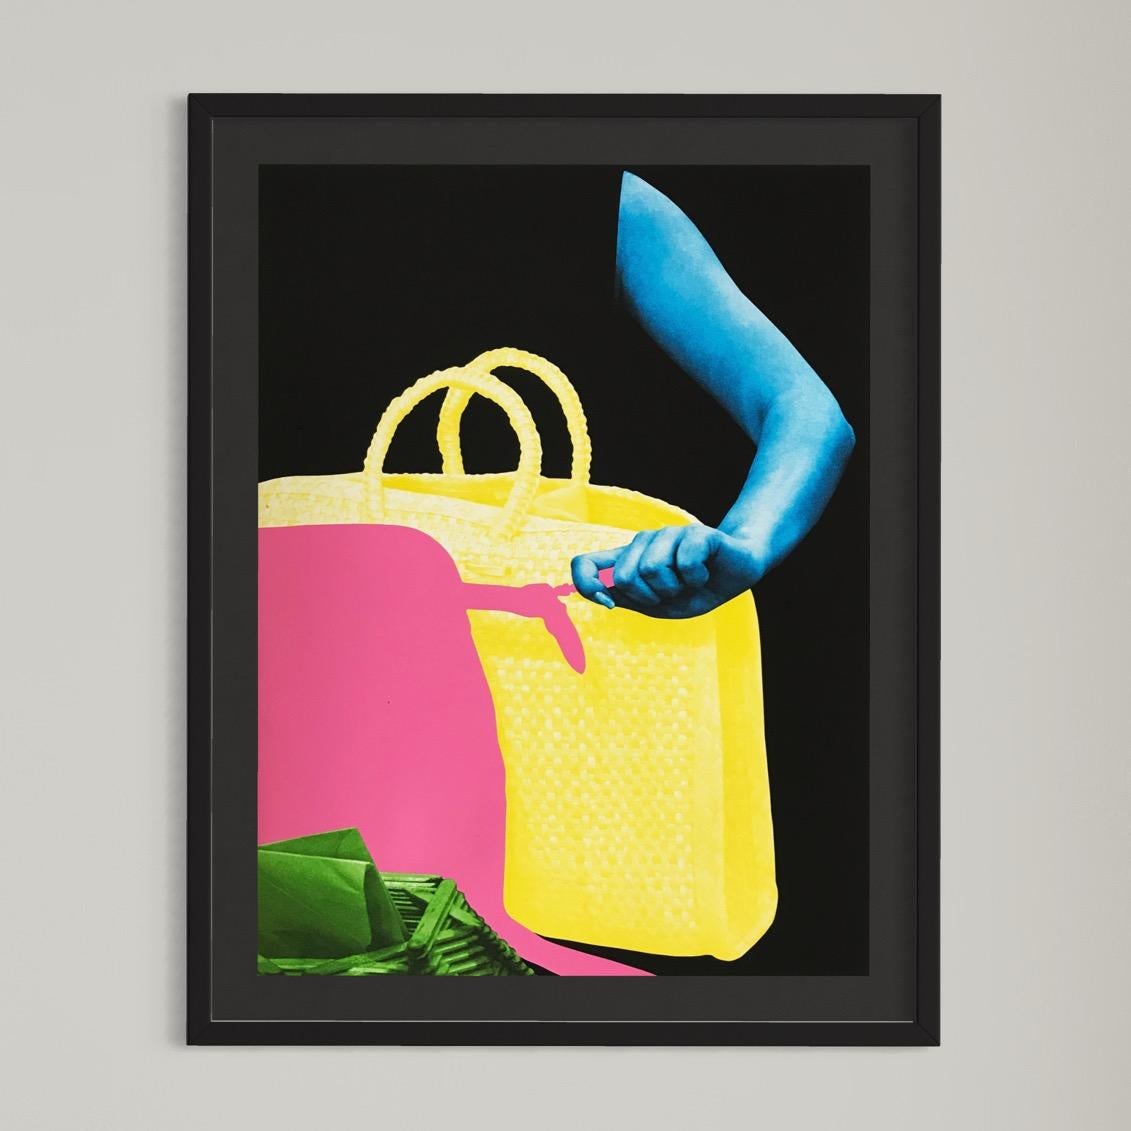 John Baldessari, deux sacs et porte-enveloppe - Art conceptuel, imprimé signé